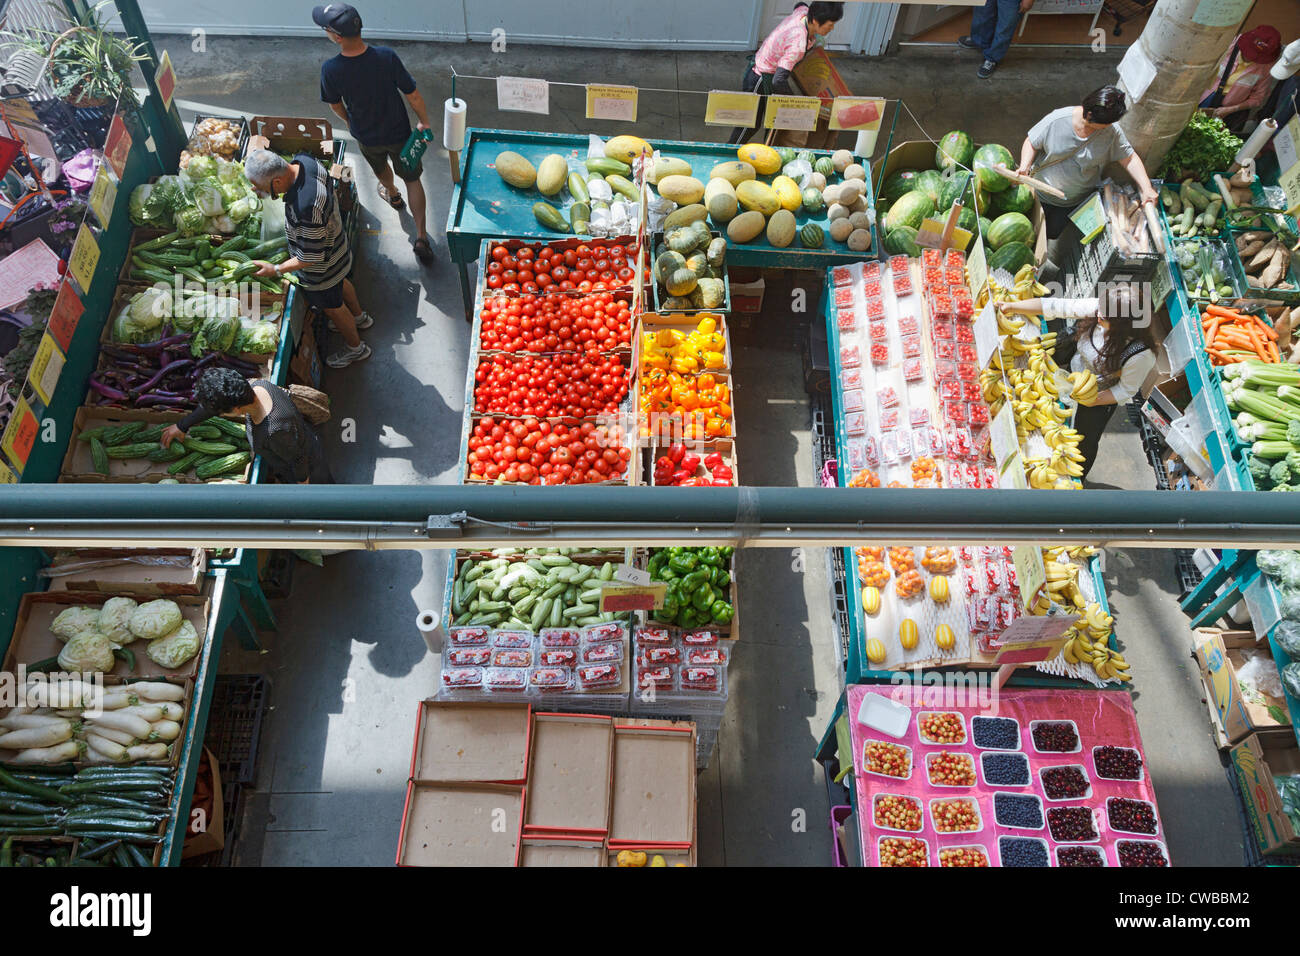 Les légumes frais et les autres produits alimentaires en vente au marché public de Richmond, qui a aussi une aire de restauration avec cuisine asiatique authentique. Banque D'Images